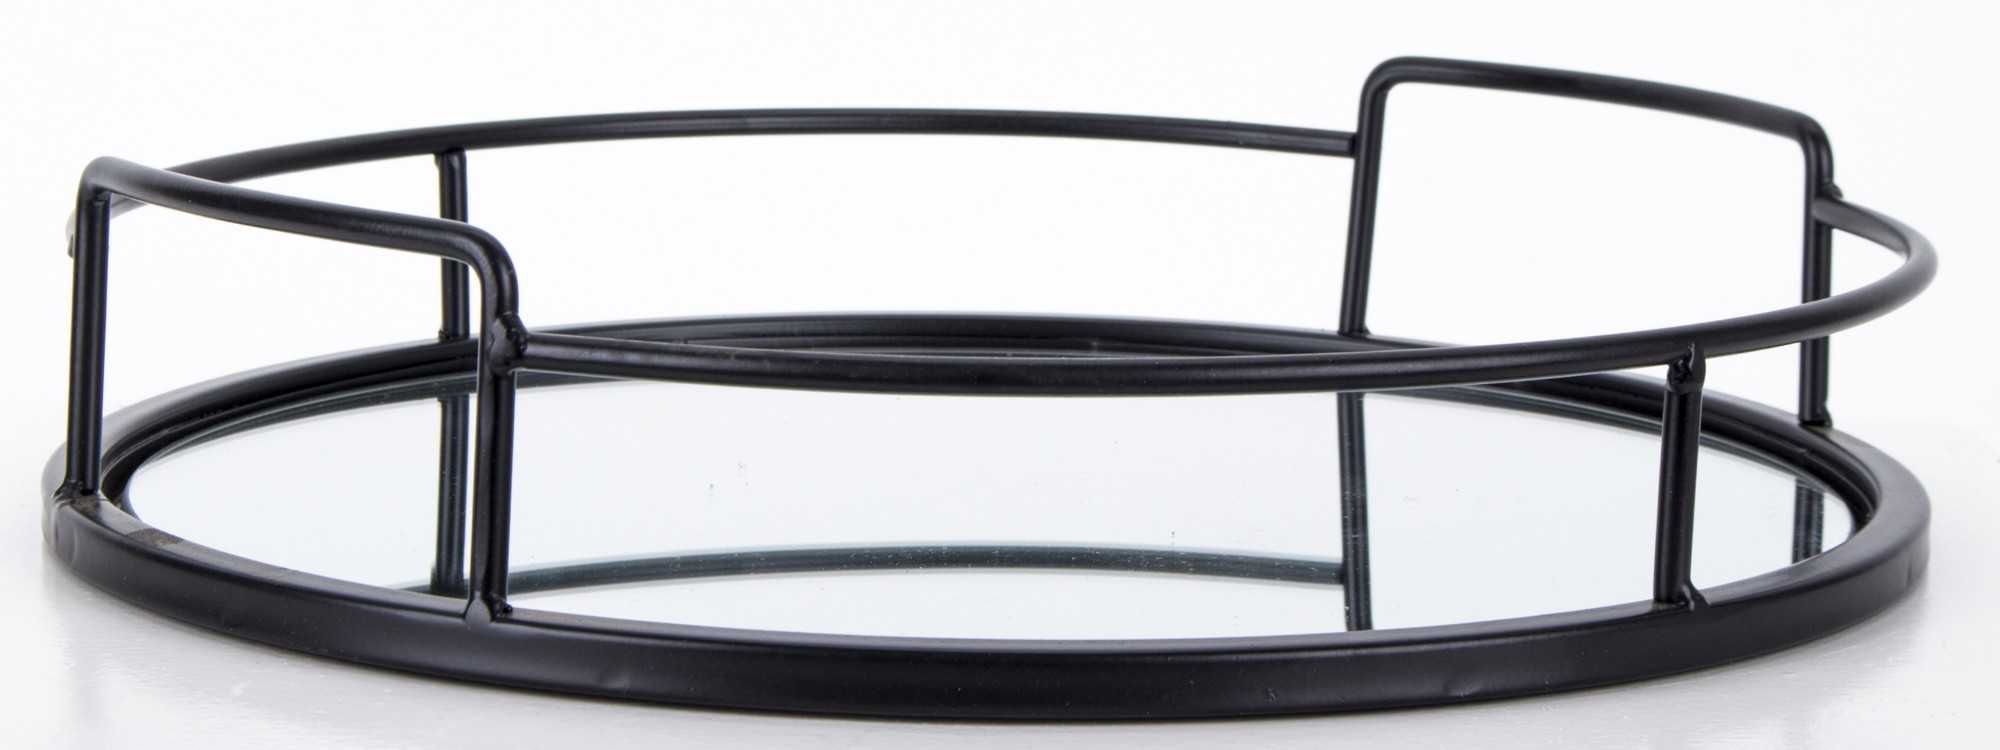 Taca lustrzana okrągła metalowa czarna Ø 32 cm